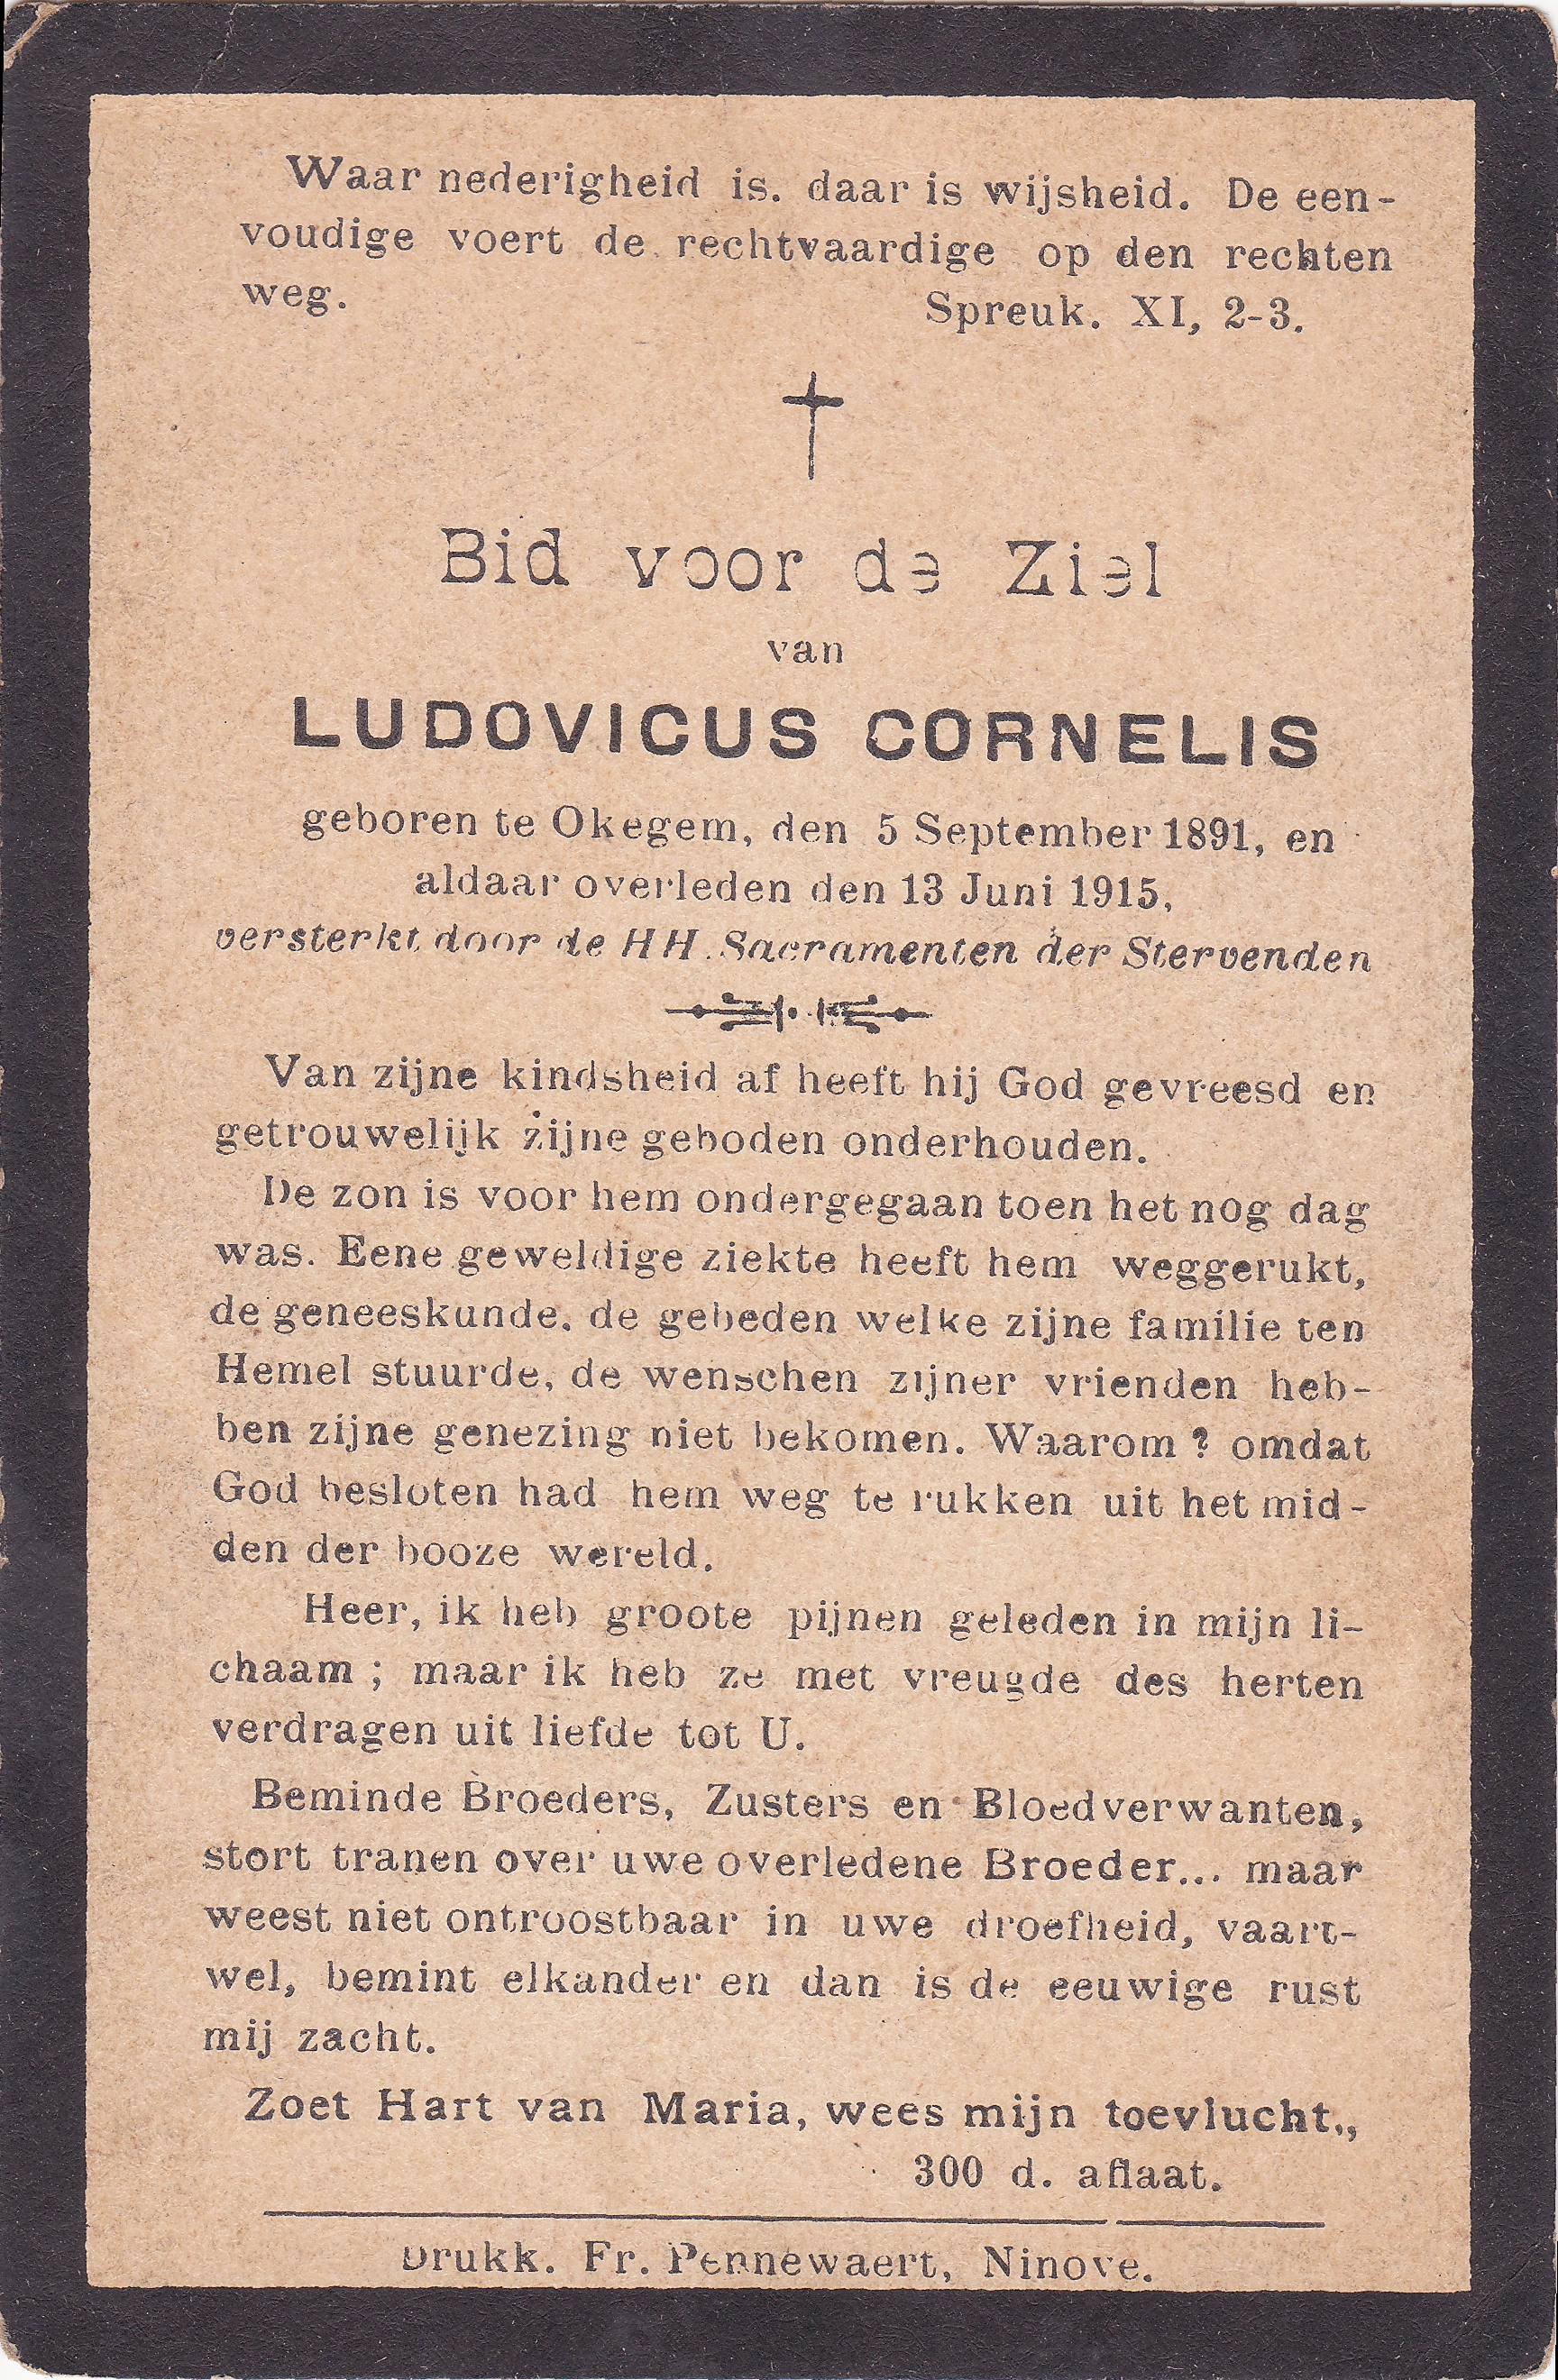 Cornelis Ludovicus